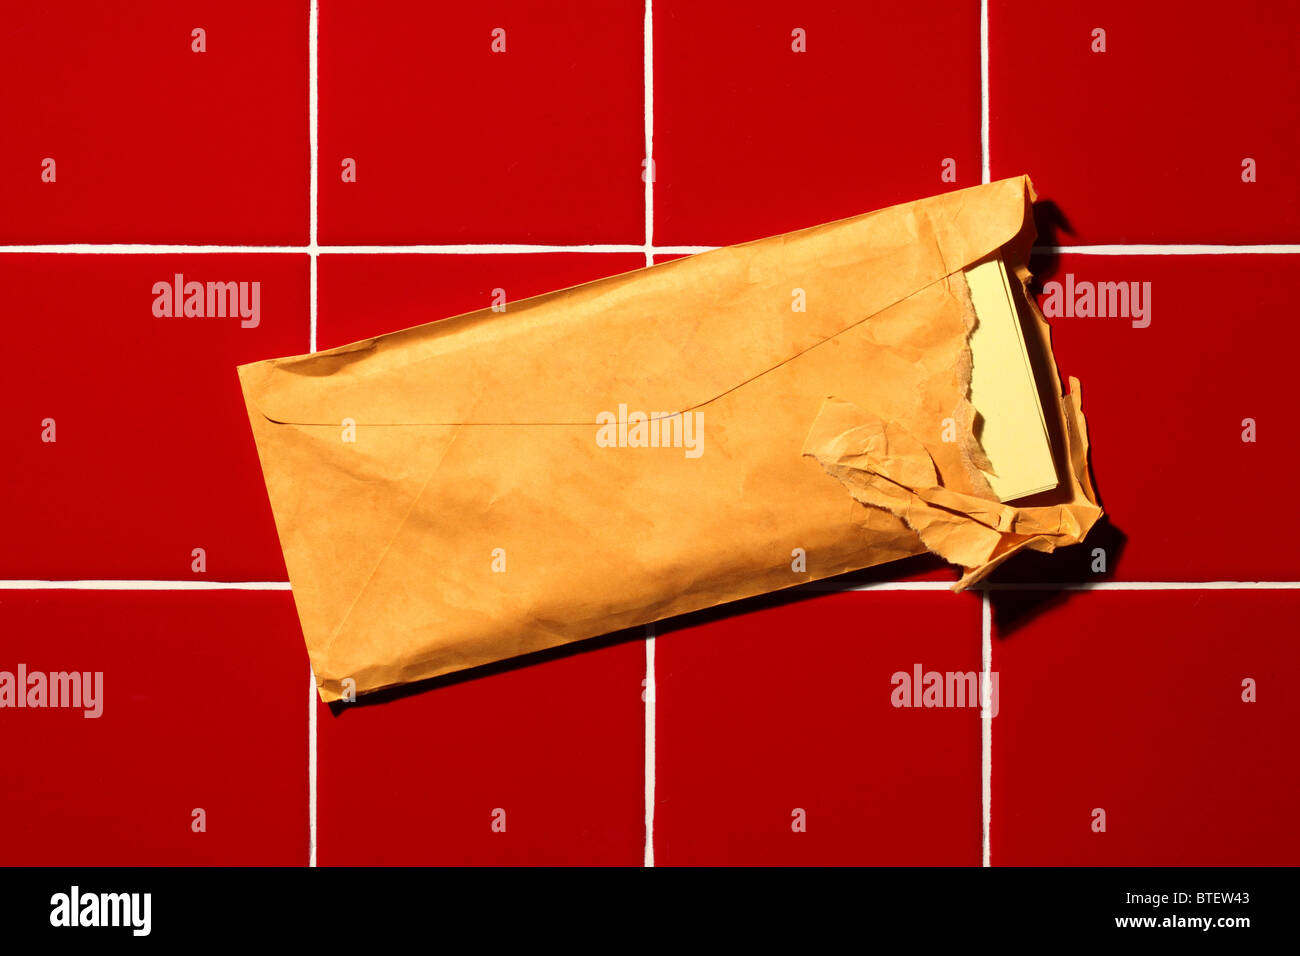 Eine gebrauchte mailing Postumschlag aufgerissen. Rot gekachelter Hintergrund Stockfoto